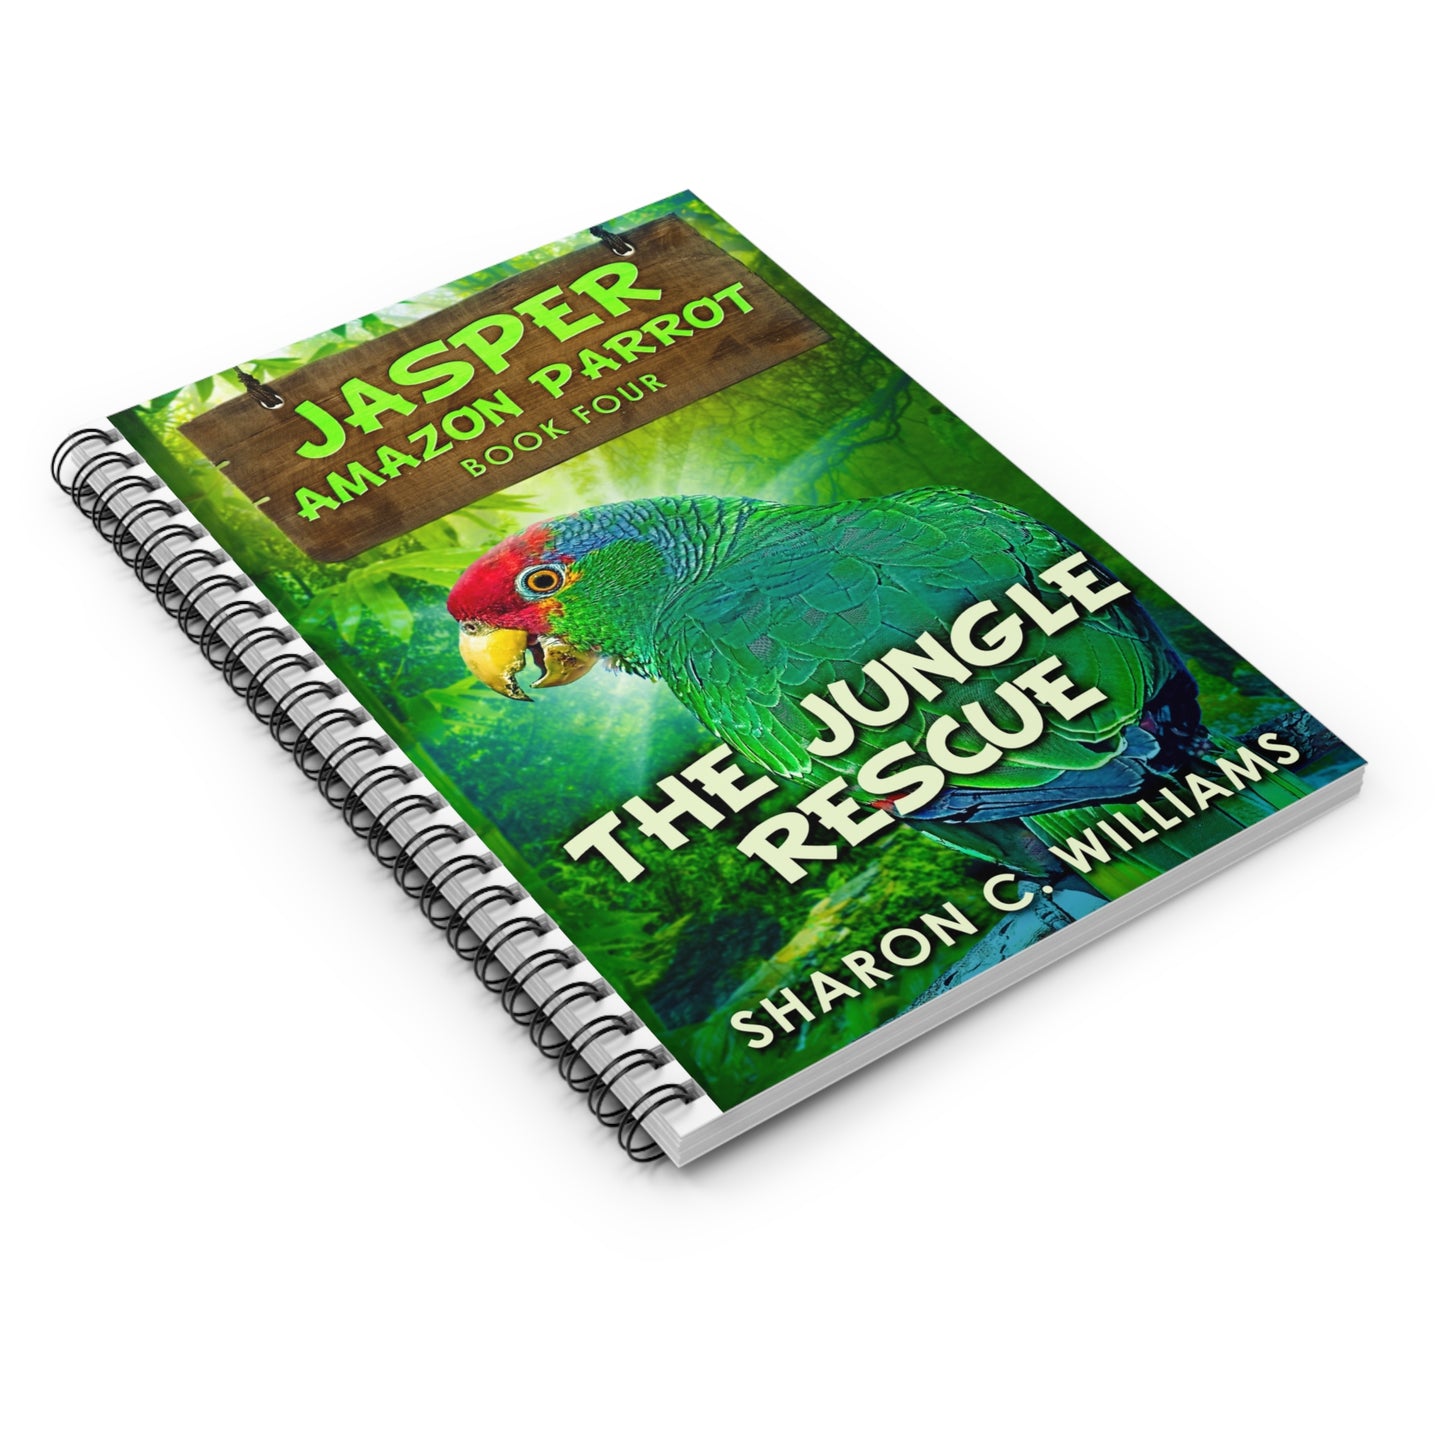 The Jungle Rescue - Spiral Notebook